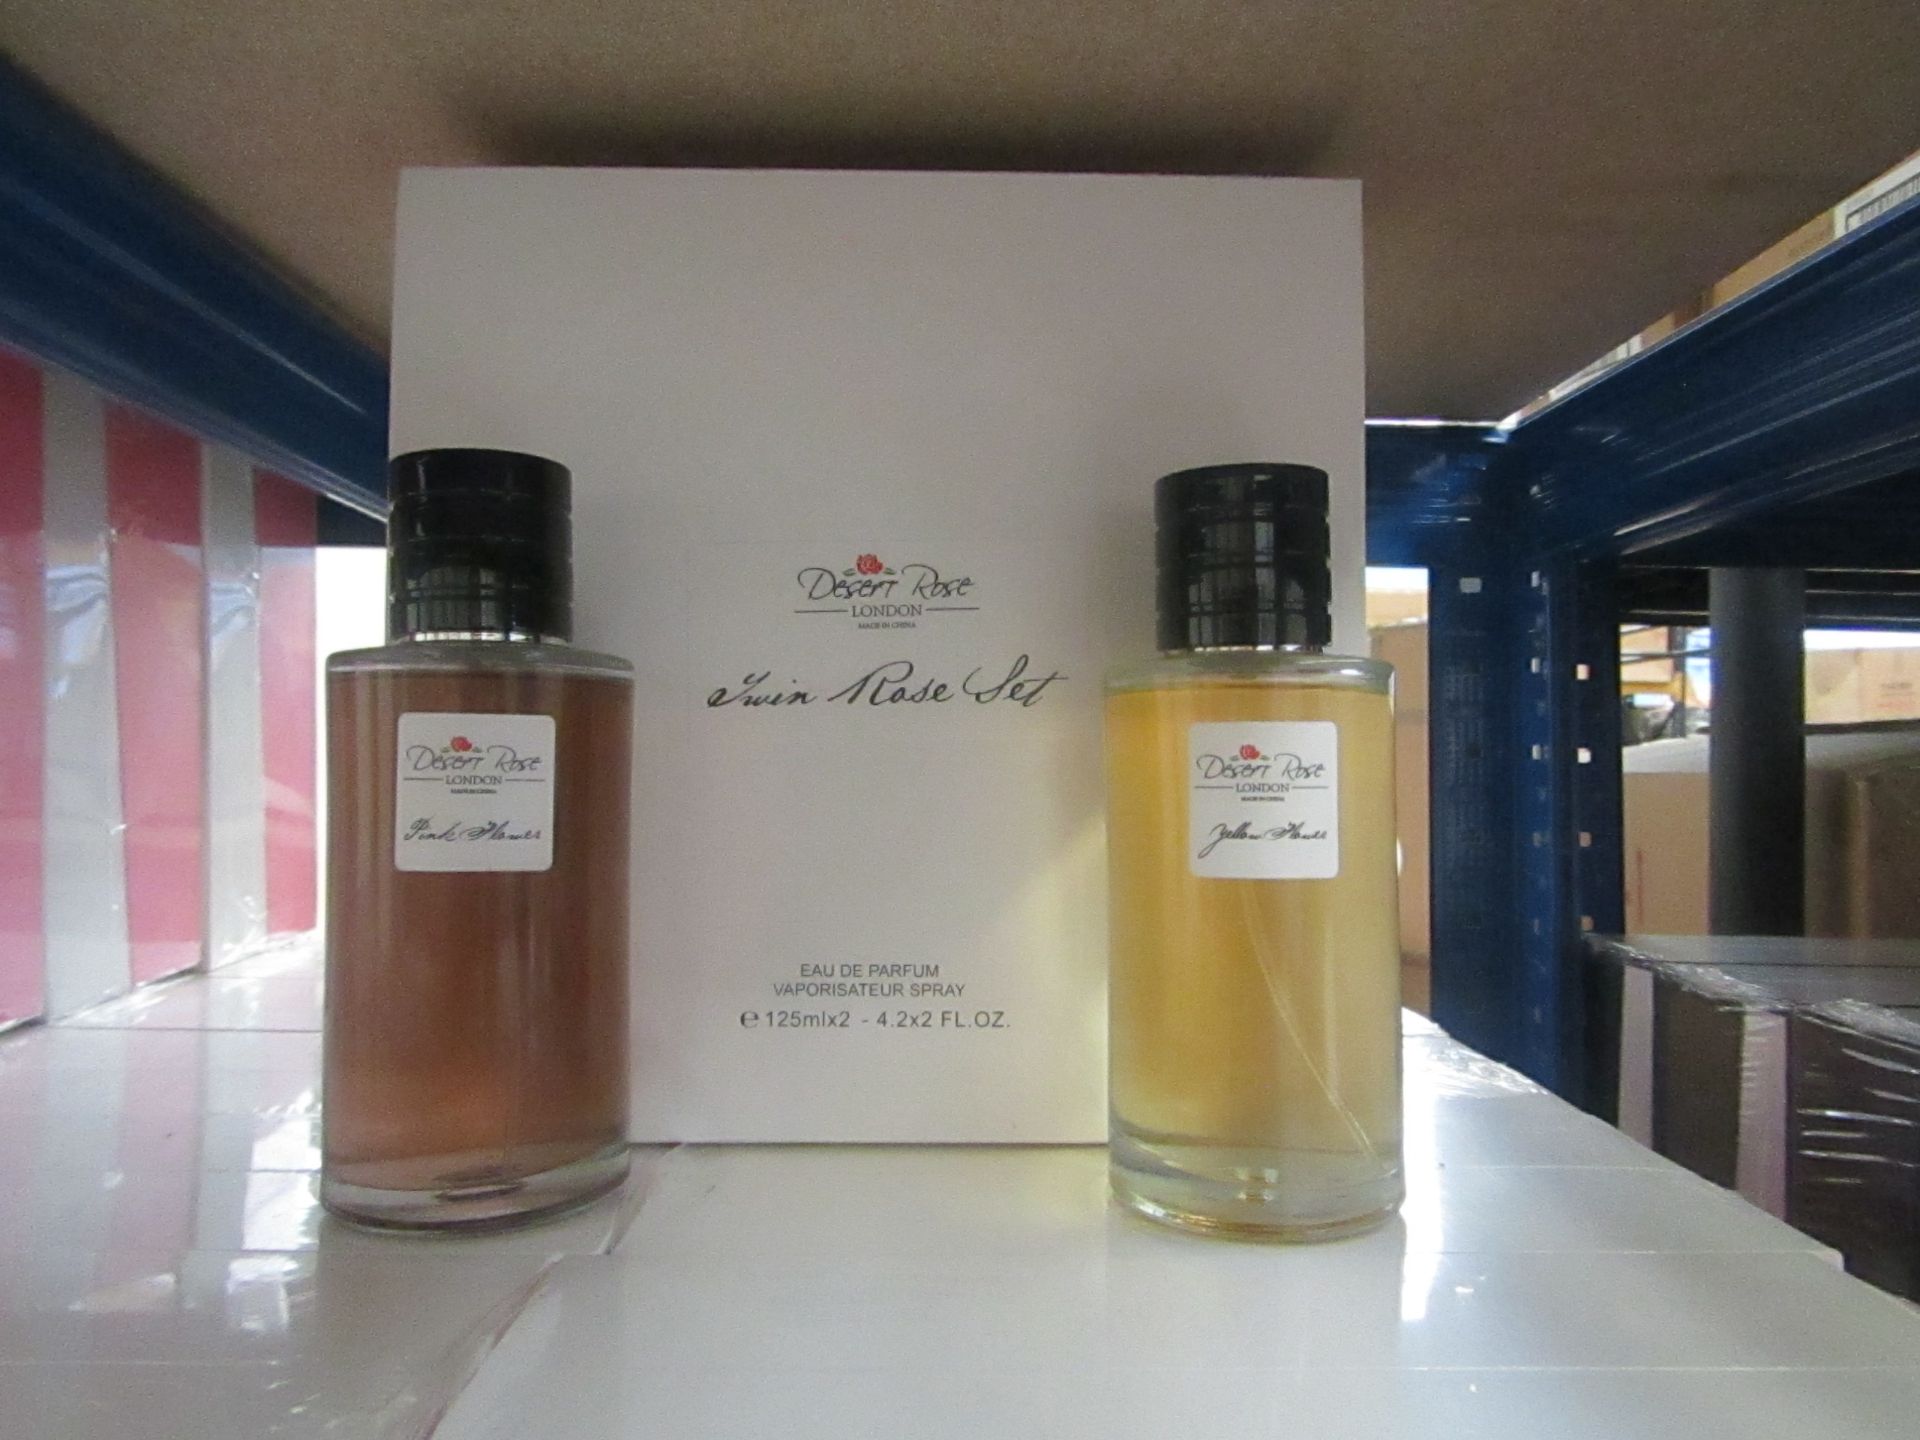 Desert Rose London - Twim Rose Eau De Parfum Vaporisateur Spray Set (2x 125ml) - New & Boxed. - Image 2 of 2